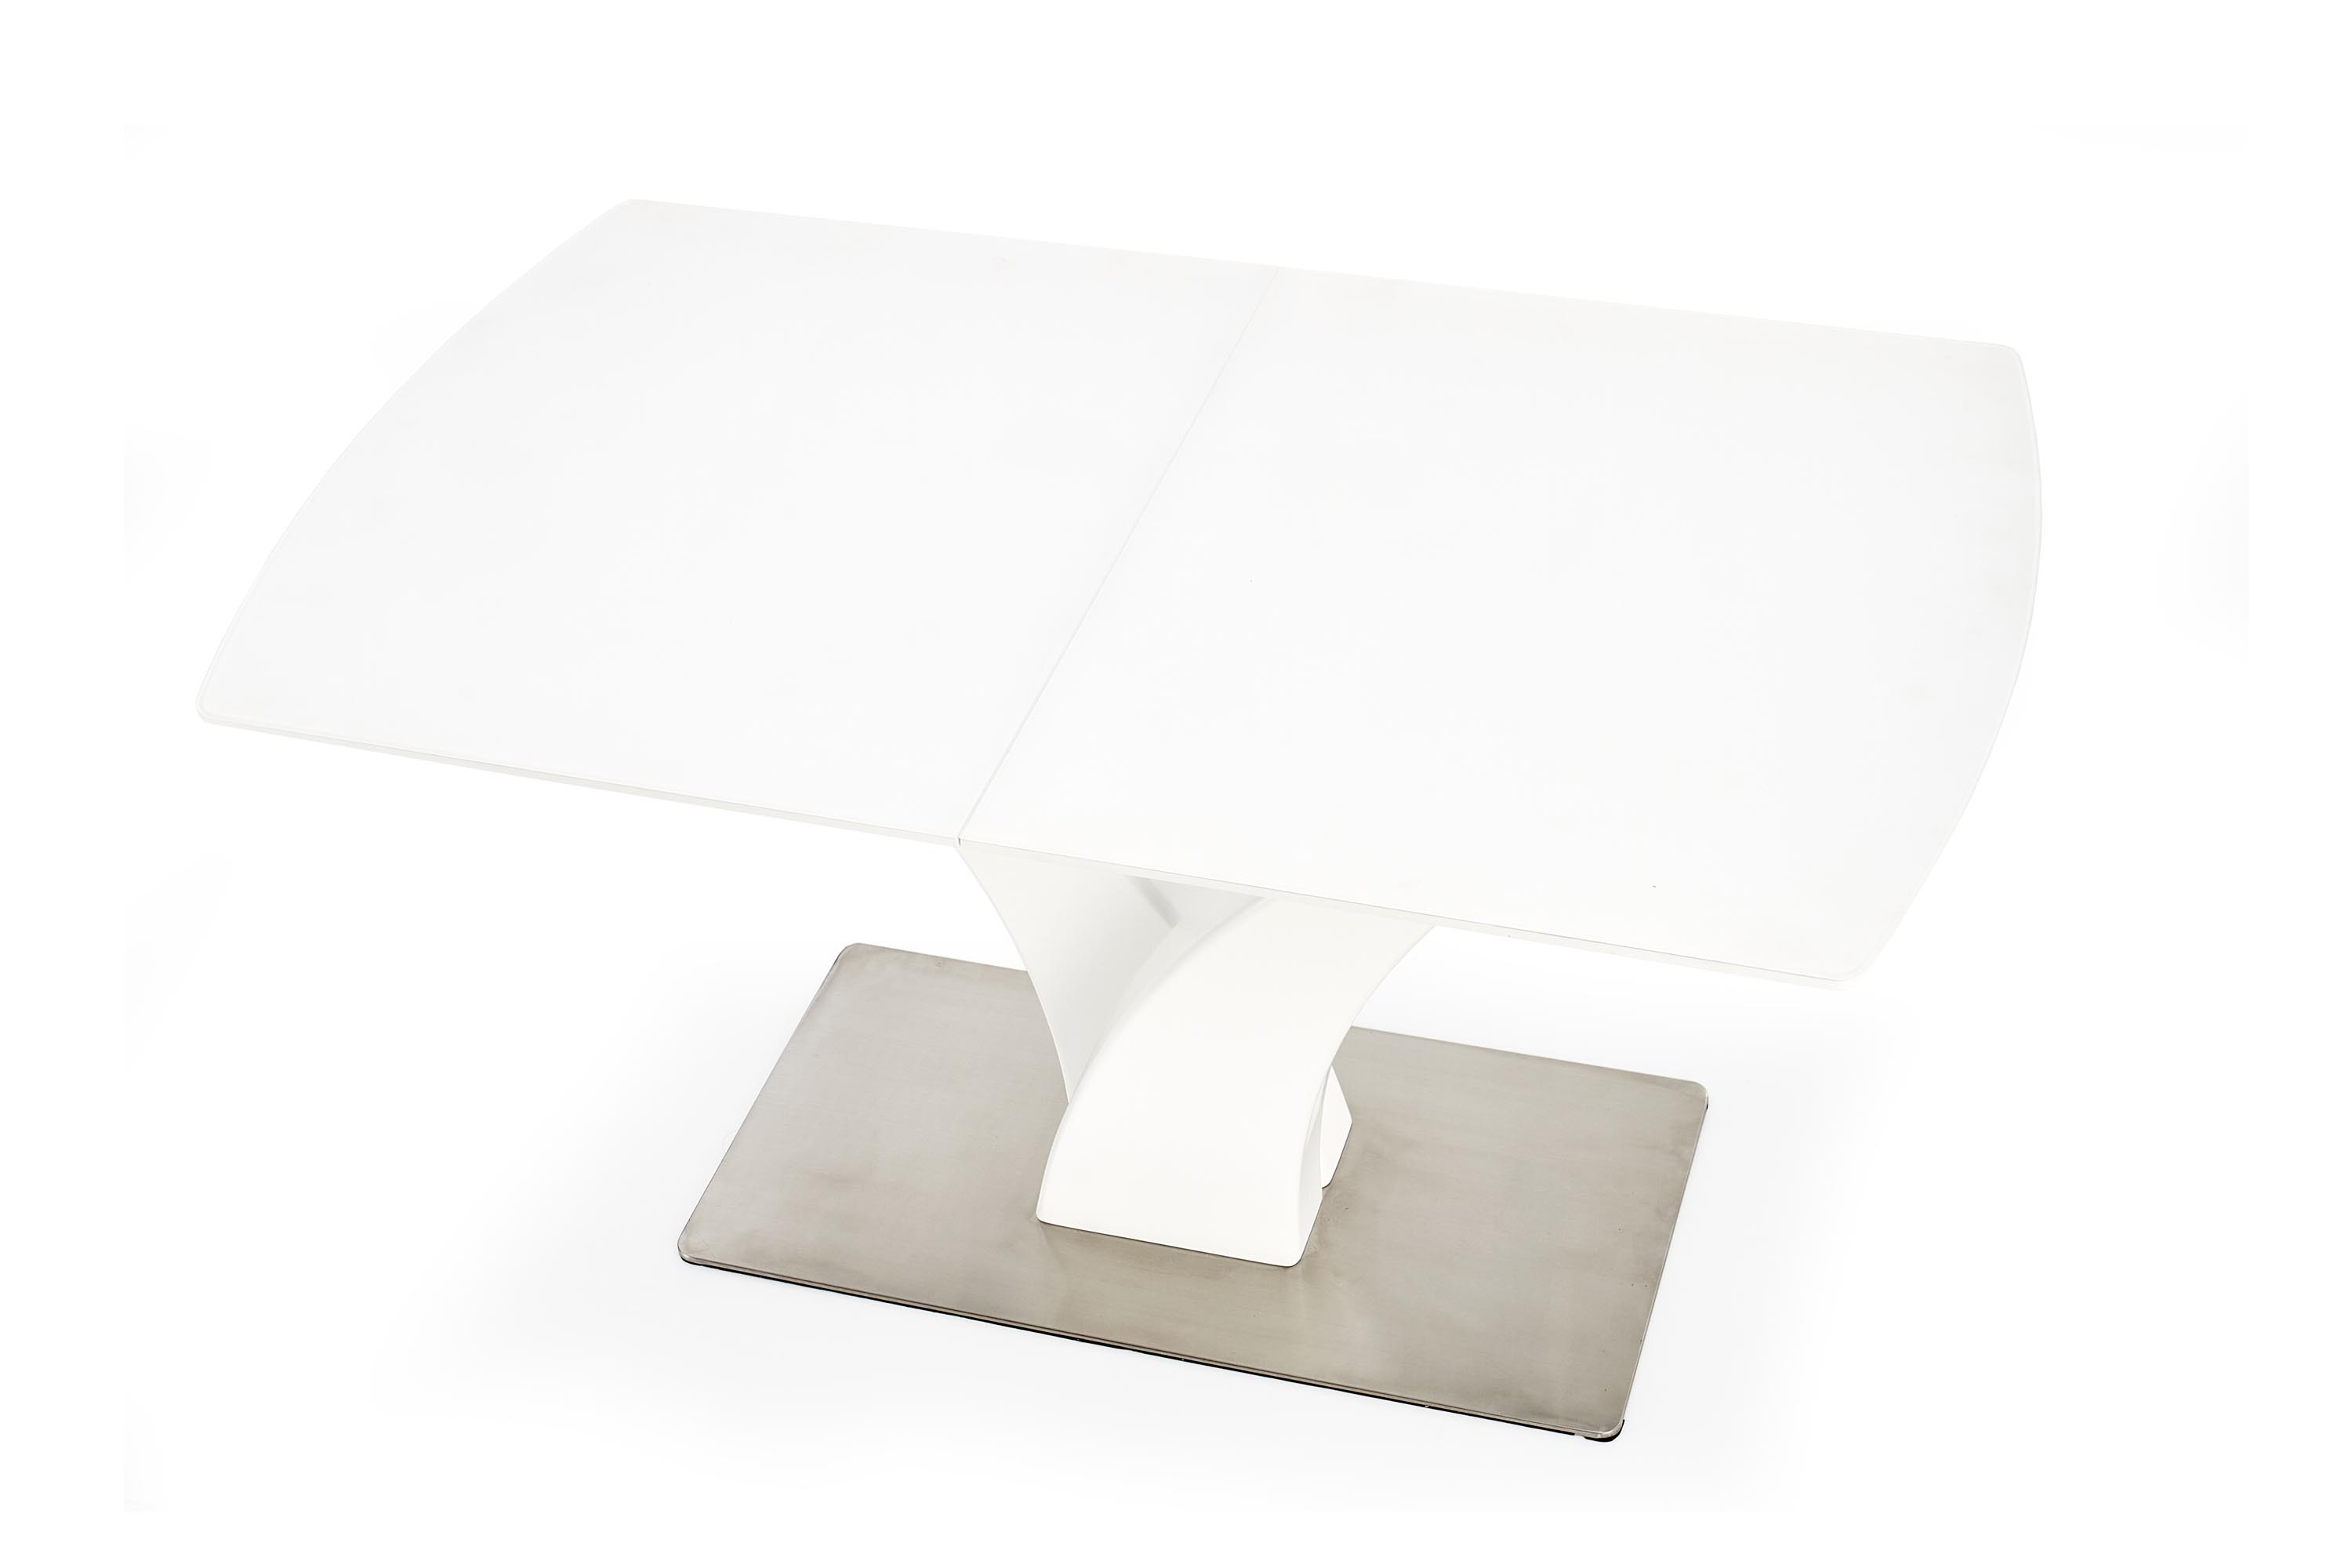 PALERMO stół rozkładany biały mat (3p=1szt)